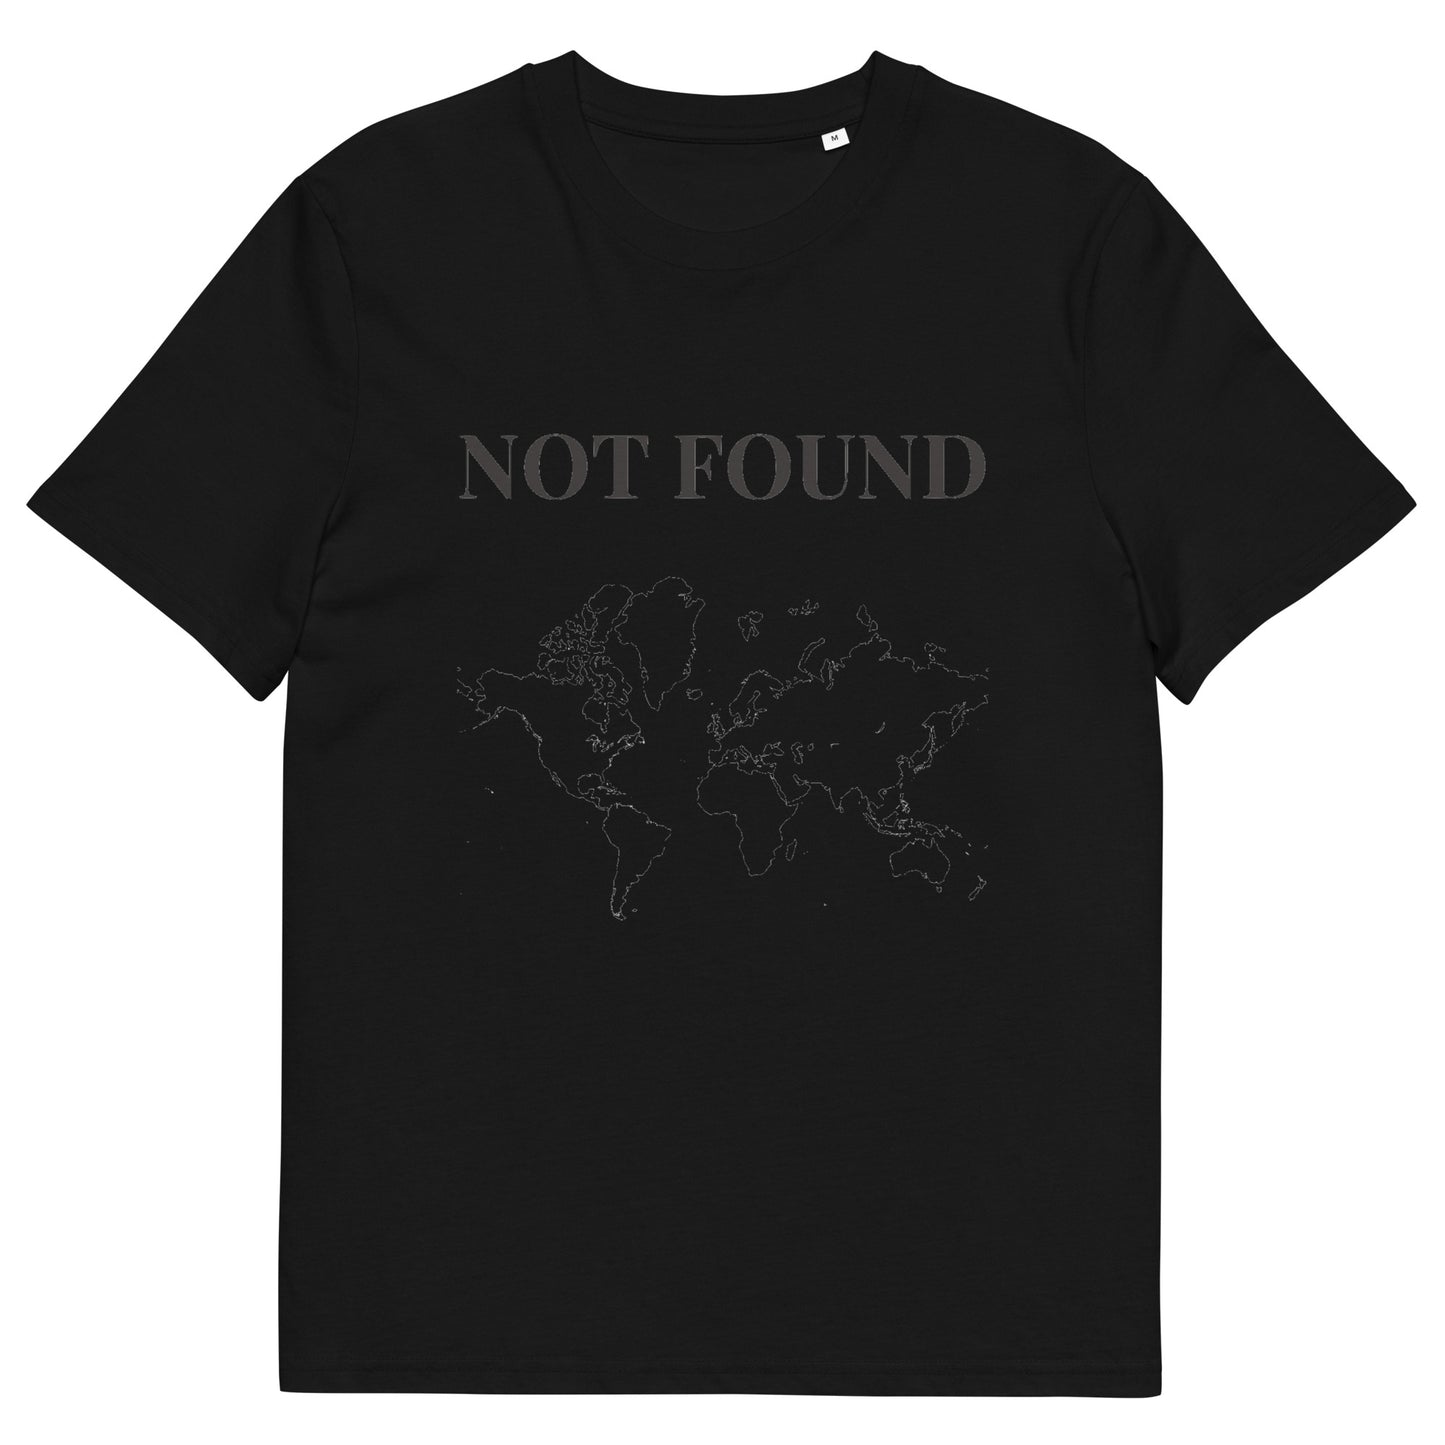 Camiseta exclusiva NotFound